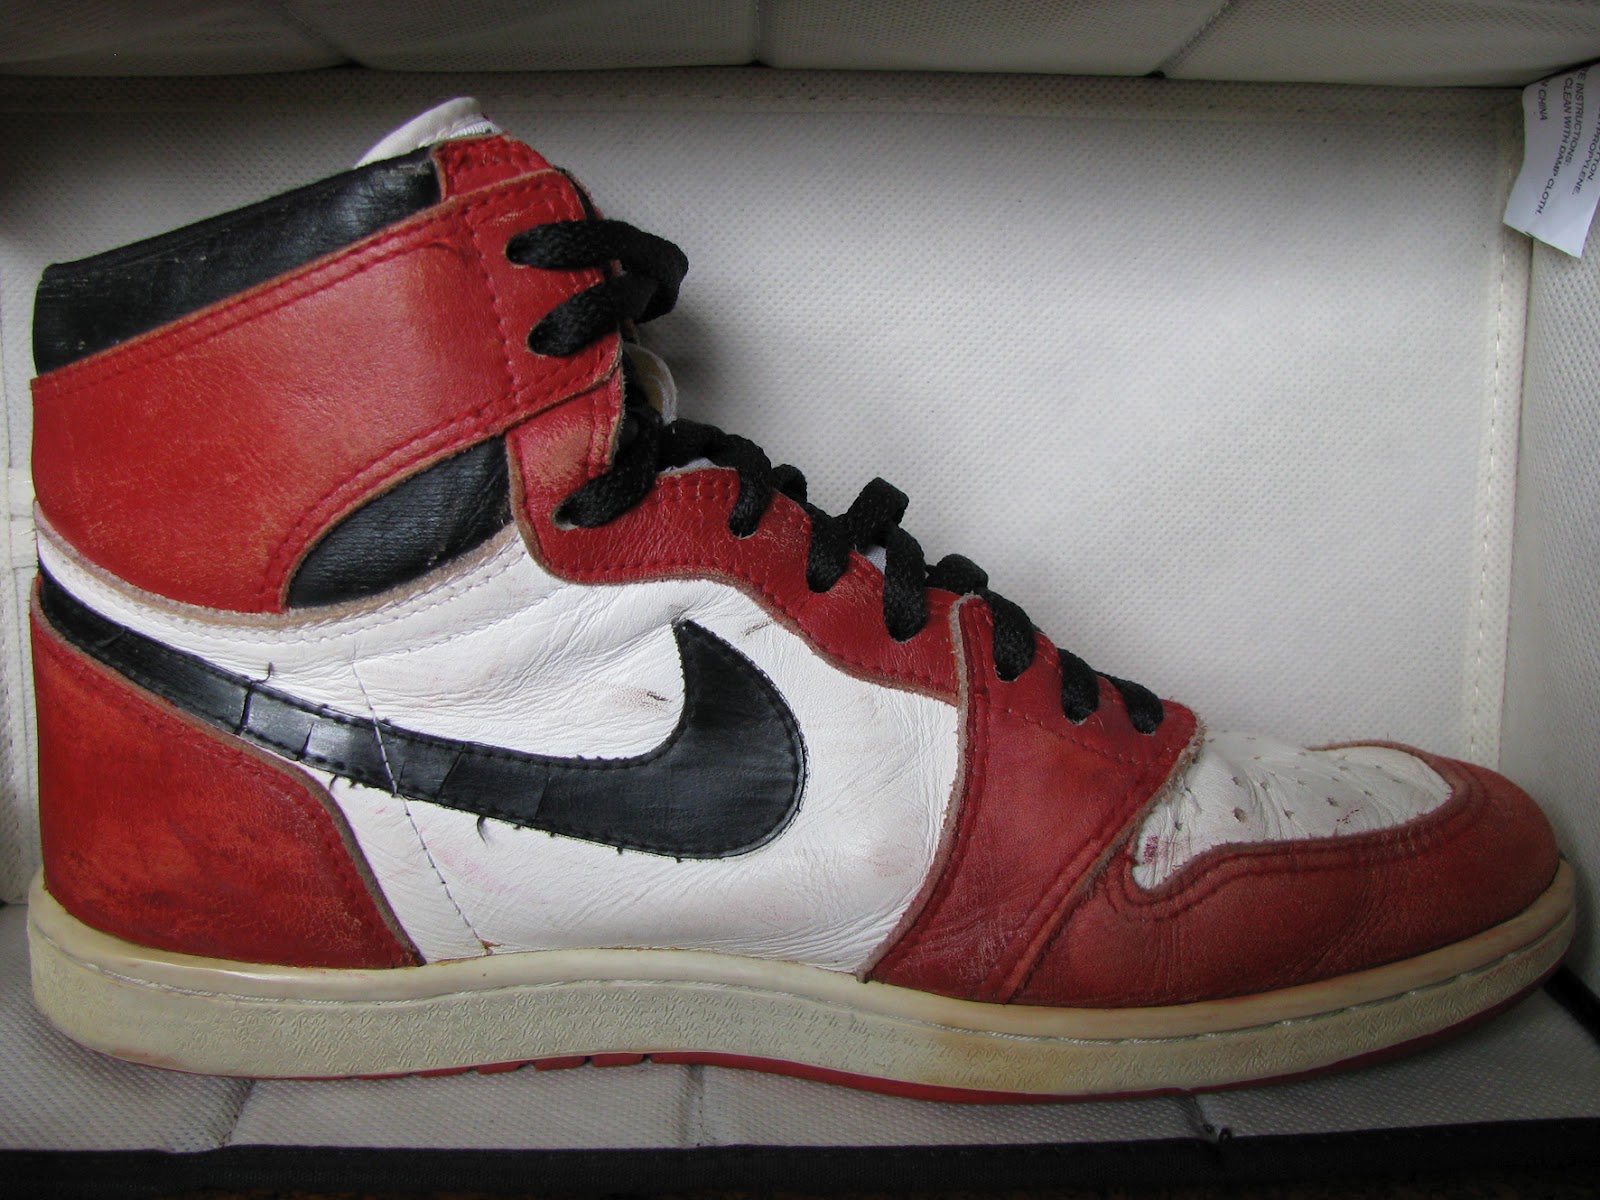 HOCKAKAY: Vintage Nike Air Jordan 1 OG 1985